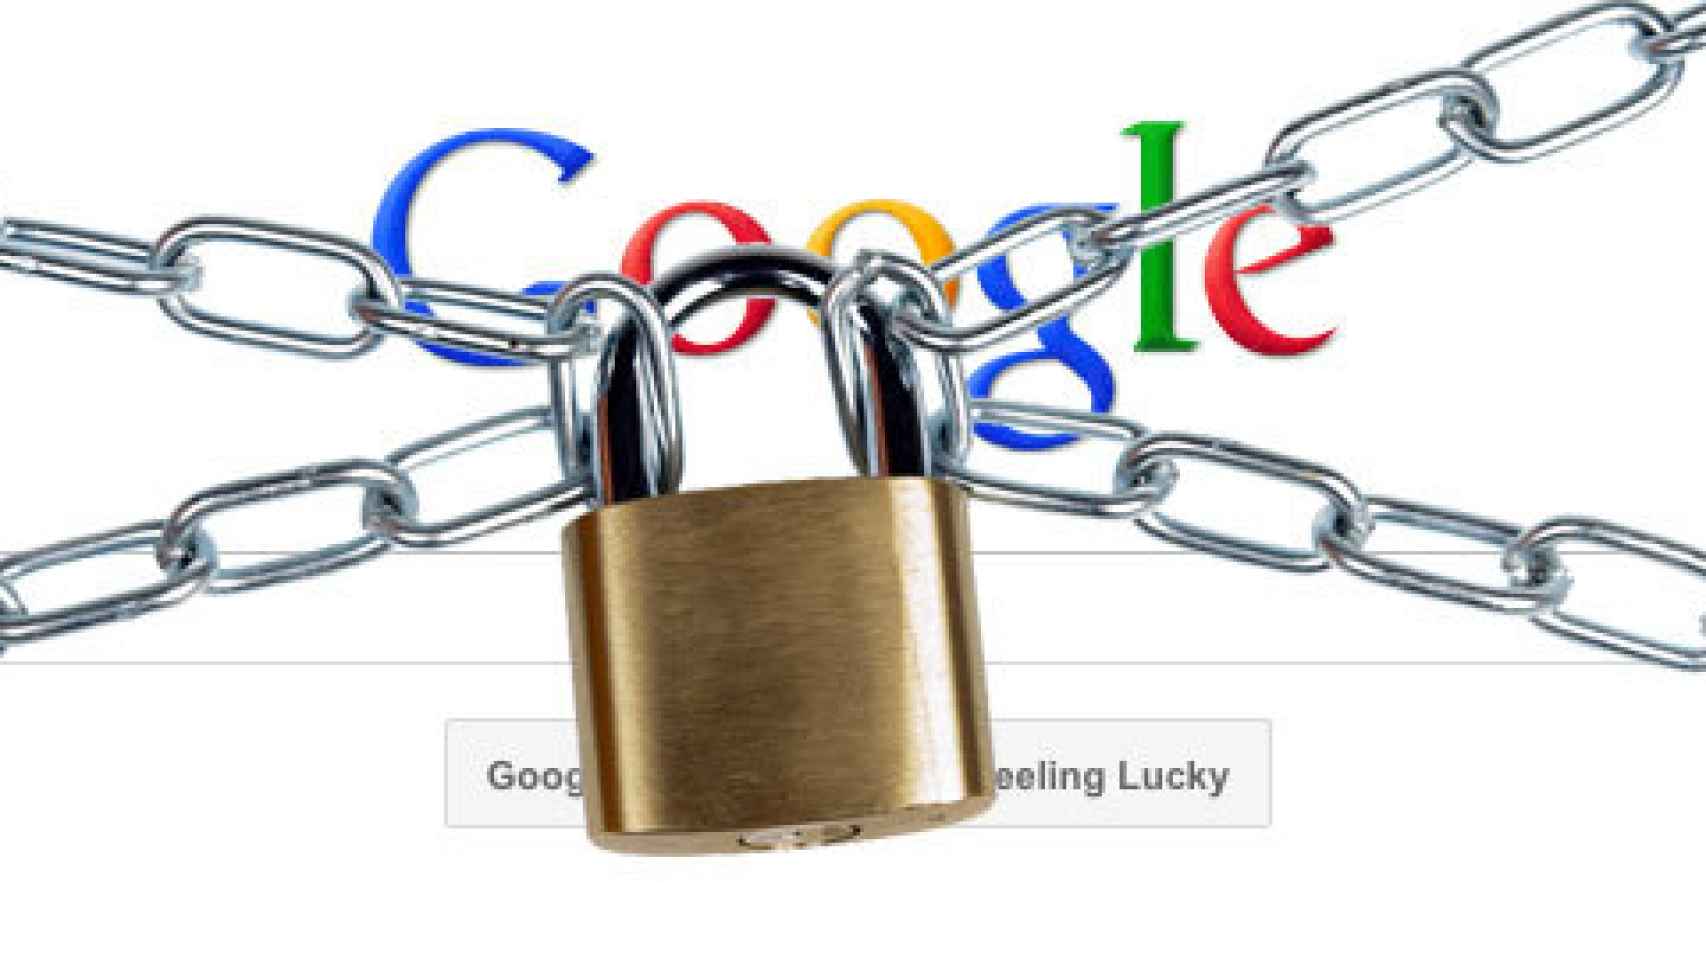 Google recompensará a quién descubra cualquier fallo de seguridad en Android